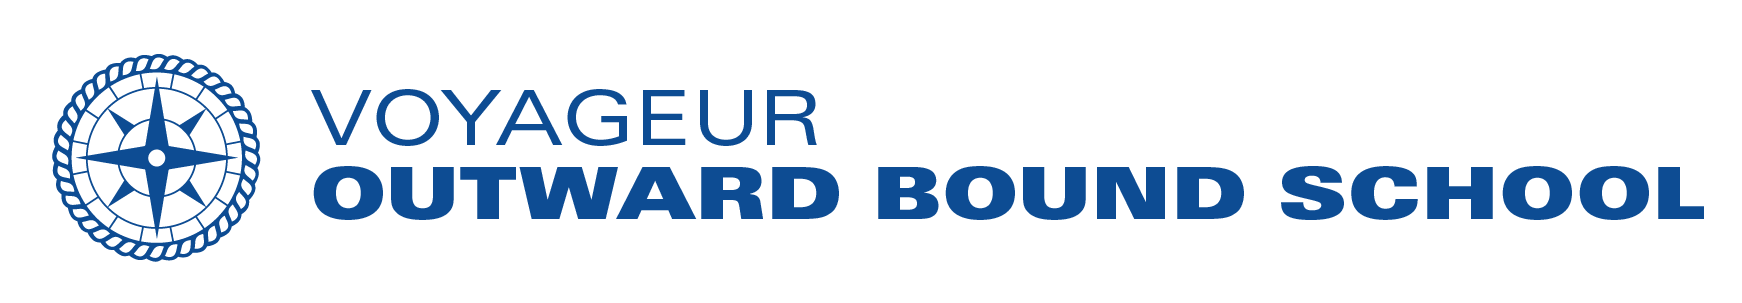 Voyageur Outward Bound School logo